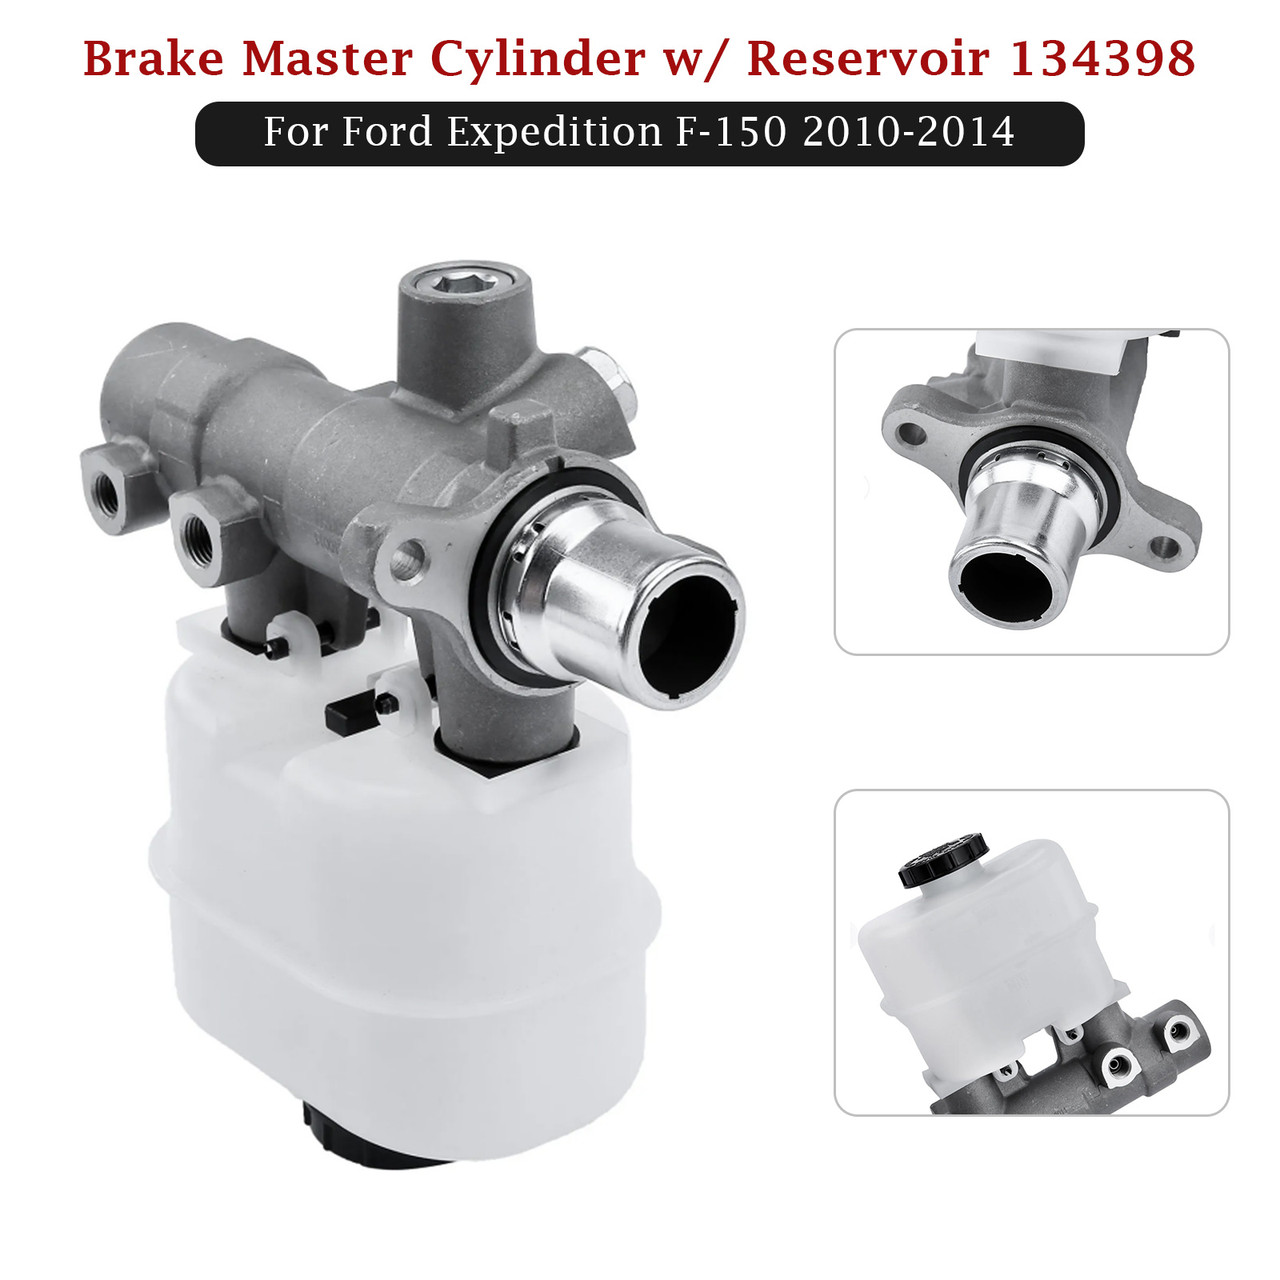 Brake Master Cylinder w/ Reservoir 134398 For Ford Expedition F-150 2010-2014